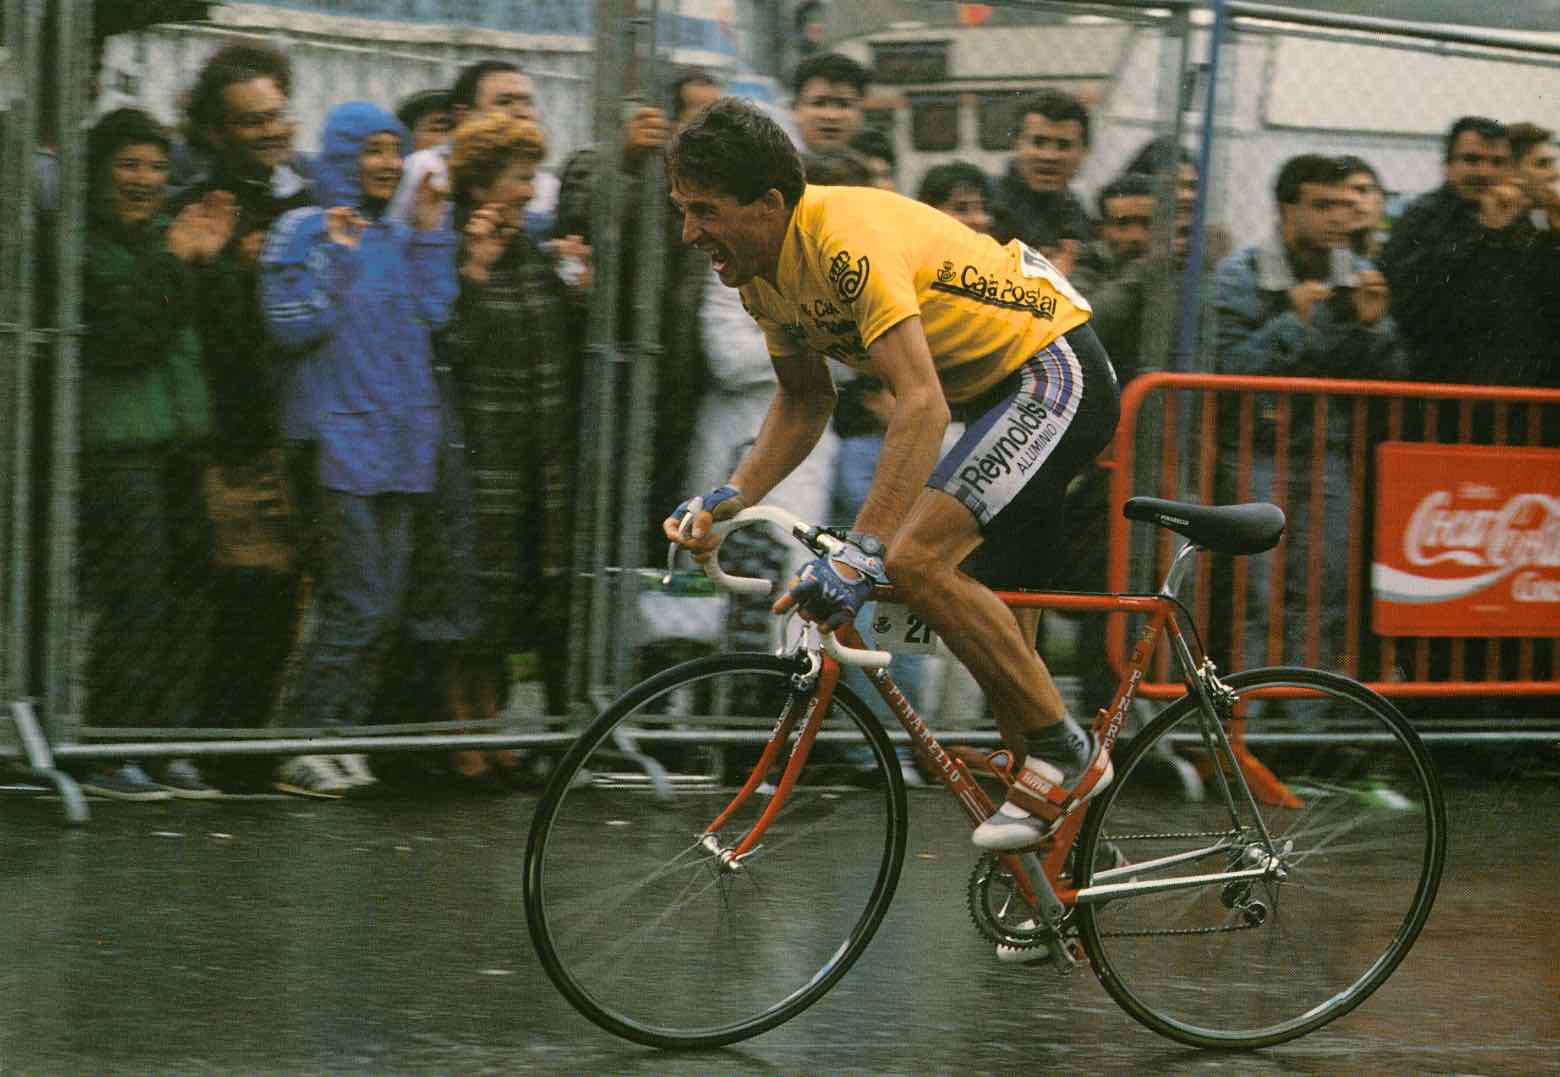 Pedro Delgado - photo 1989 main image